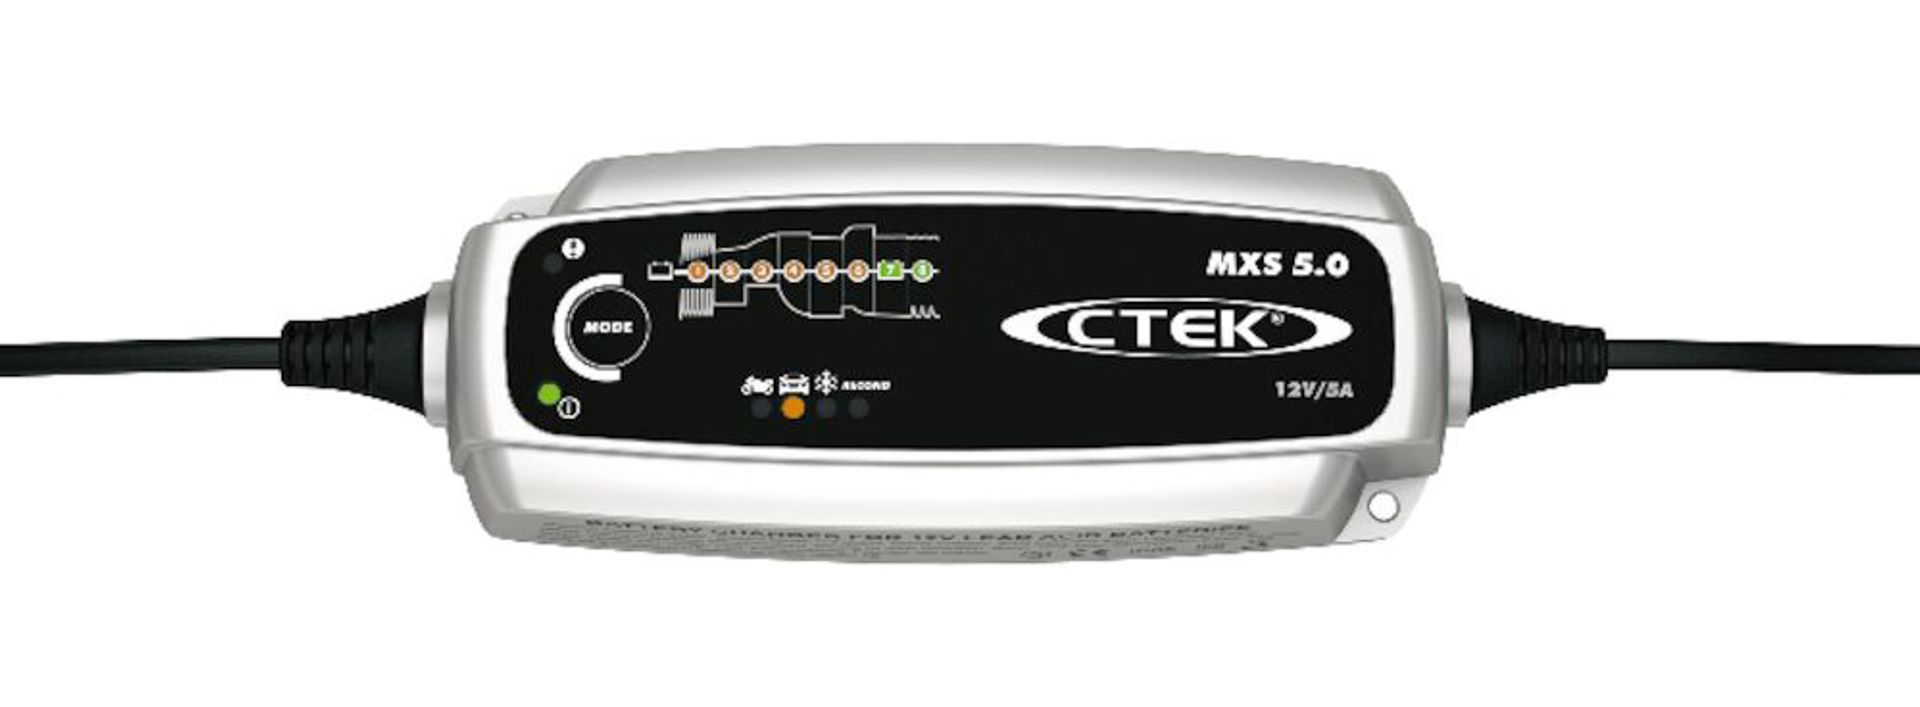 CTEK MXS 5.0, Med underhållsladdning